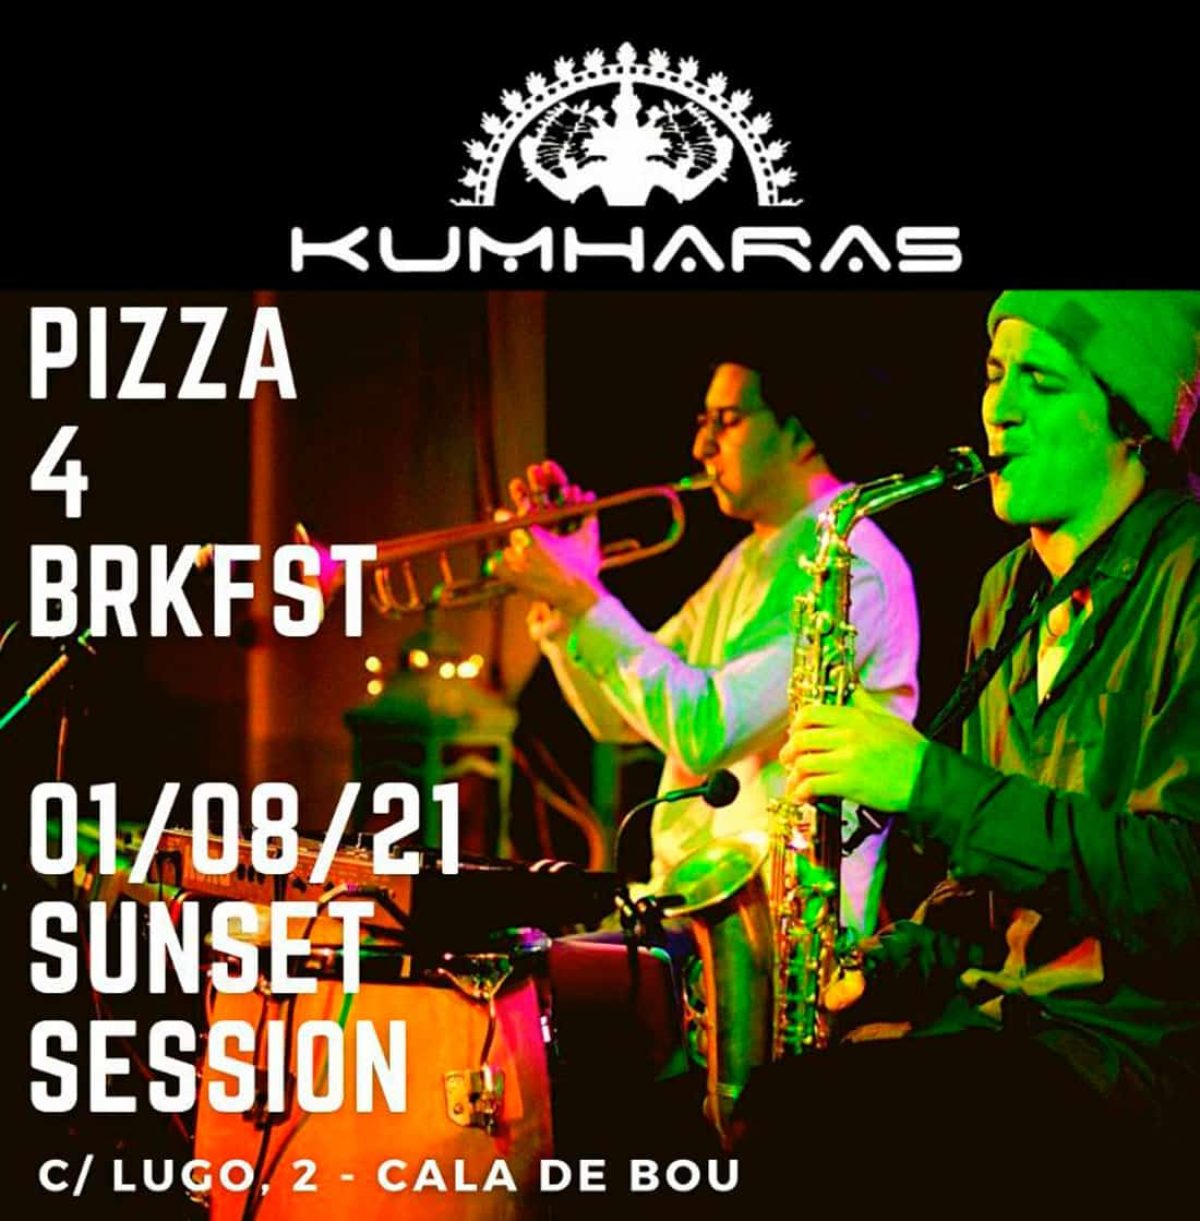 pizza-4-brkfst-kumharas-ibiza-2021-welcometoibiza